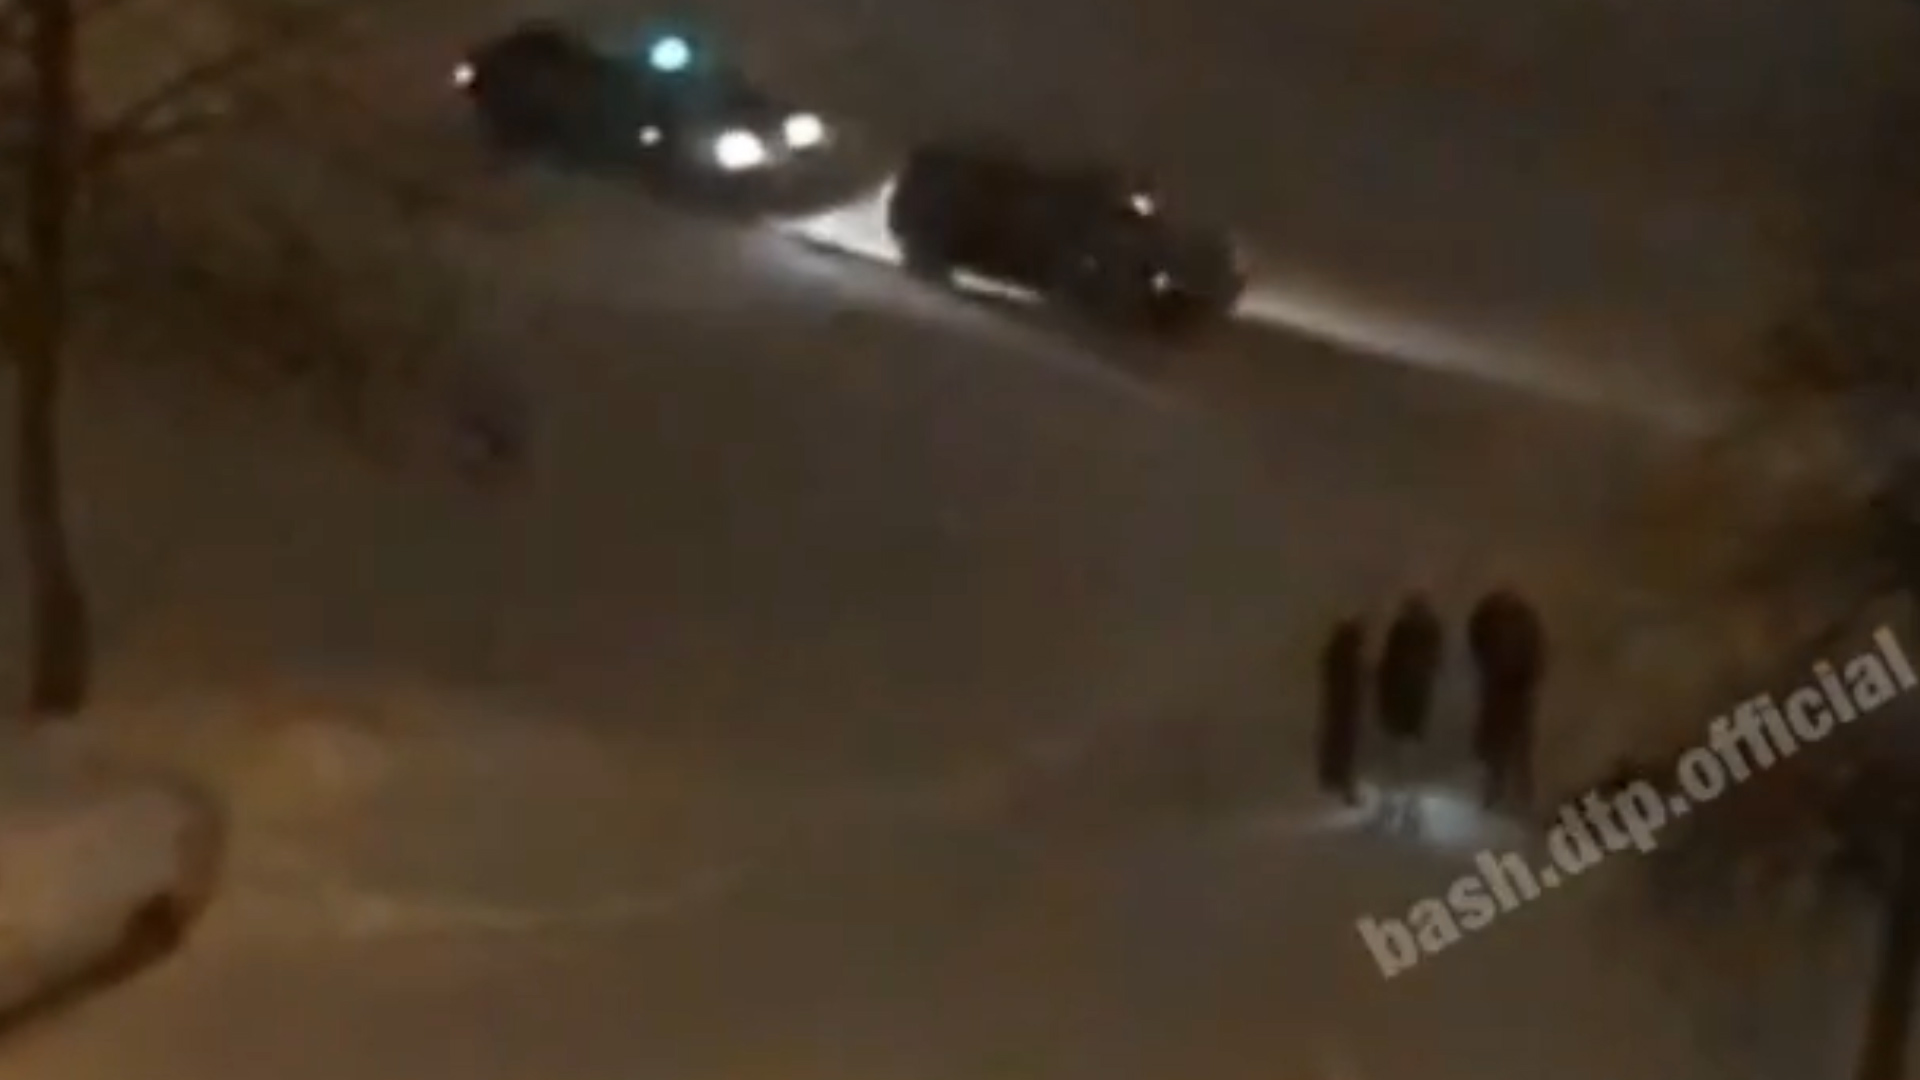 Пять таксистов избили мужчину в Уфе, очевидцы сняли видео